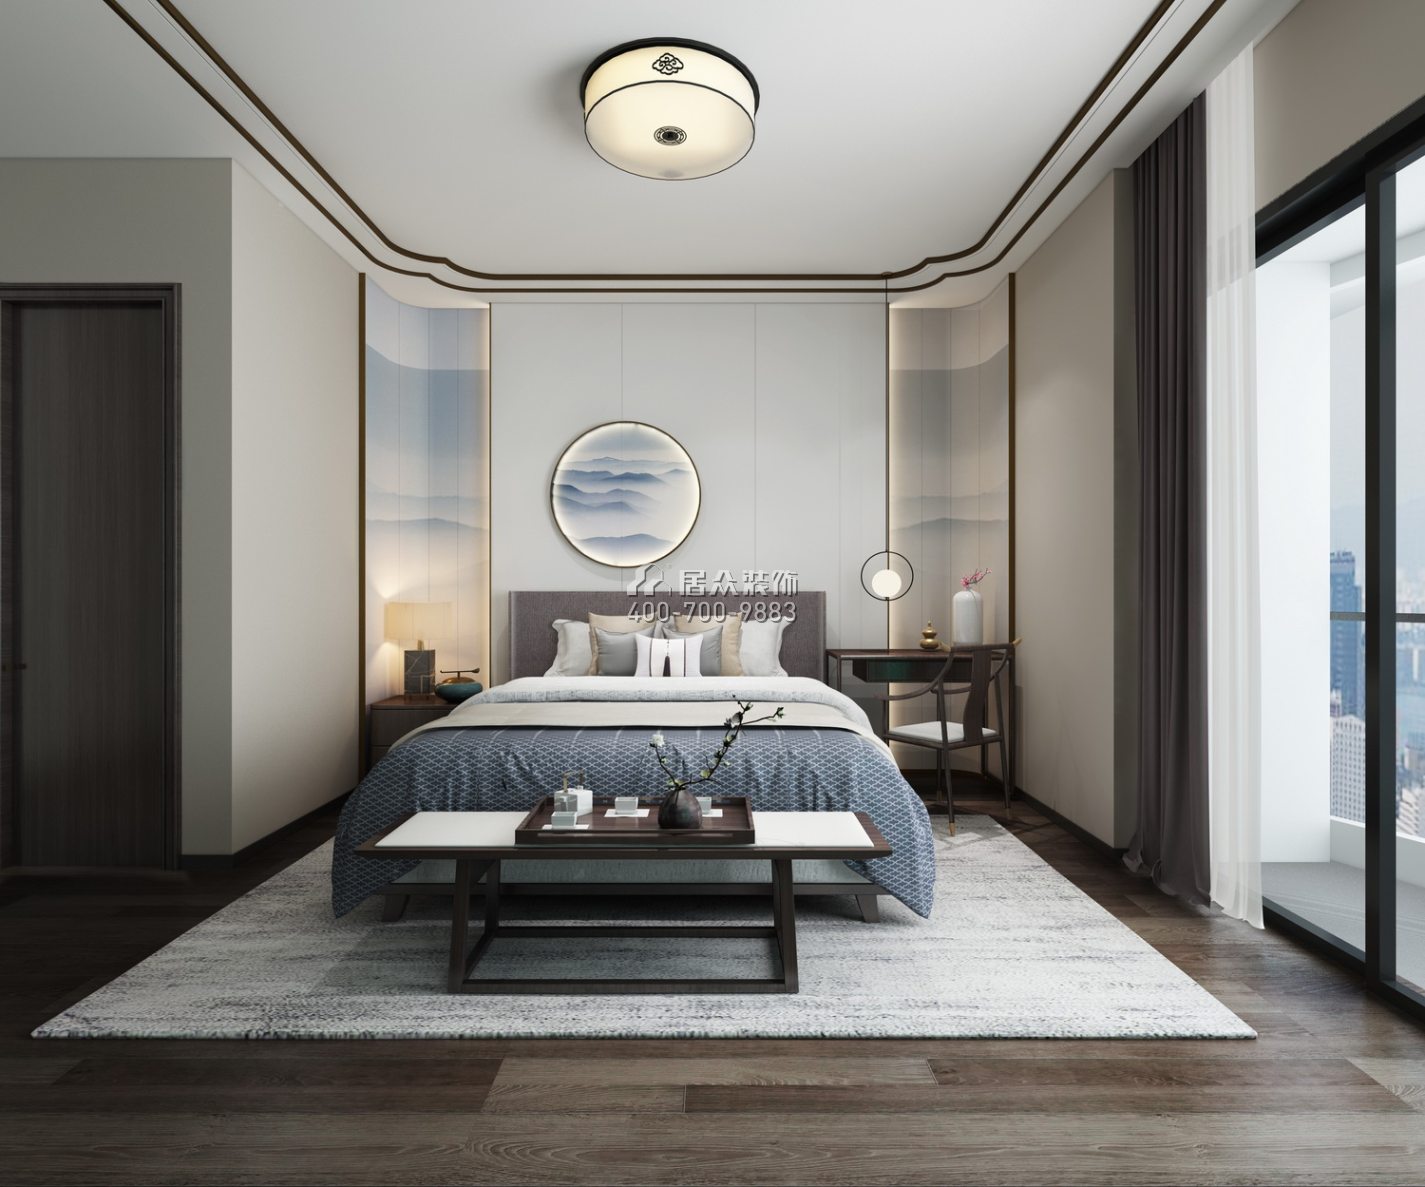 擎天华庭126平方米中式风格平层户型卧室装修效果图